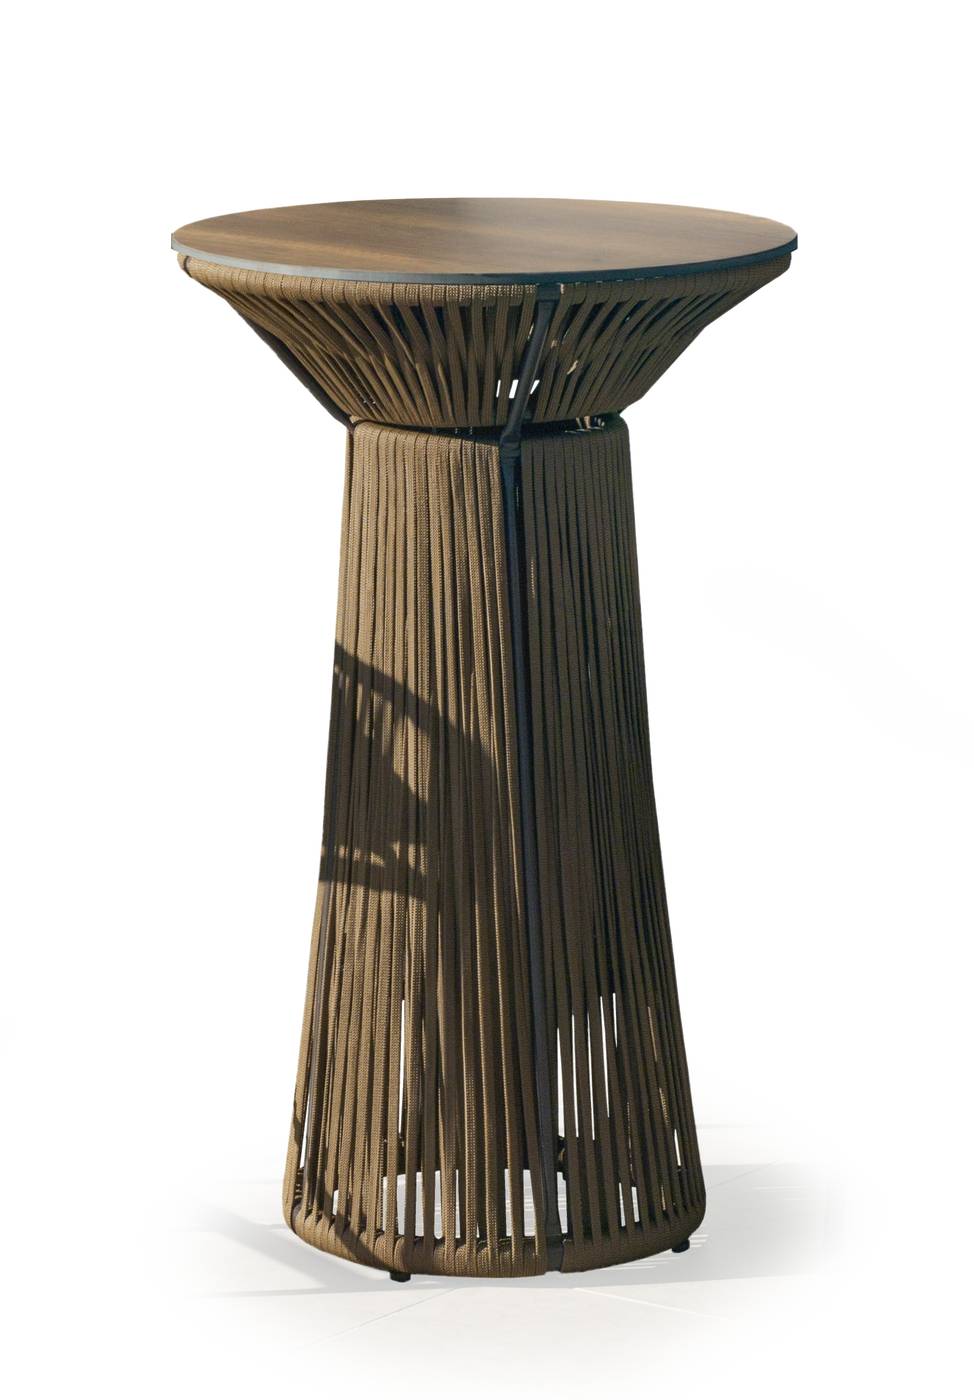 Mesa Coctel Rodhos-70 - Mesa alta de coctel de 70 cm, con tablero HPL ultra resistente. Estructura aluminio revestida de cuerda. Colores: blanco, gris, marrón o champagne.